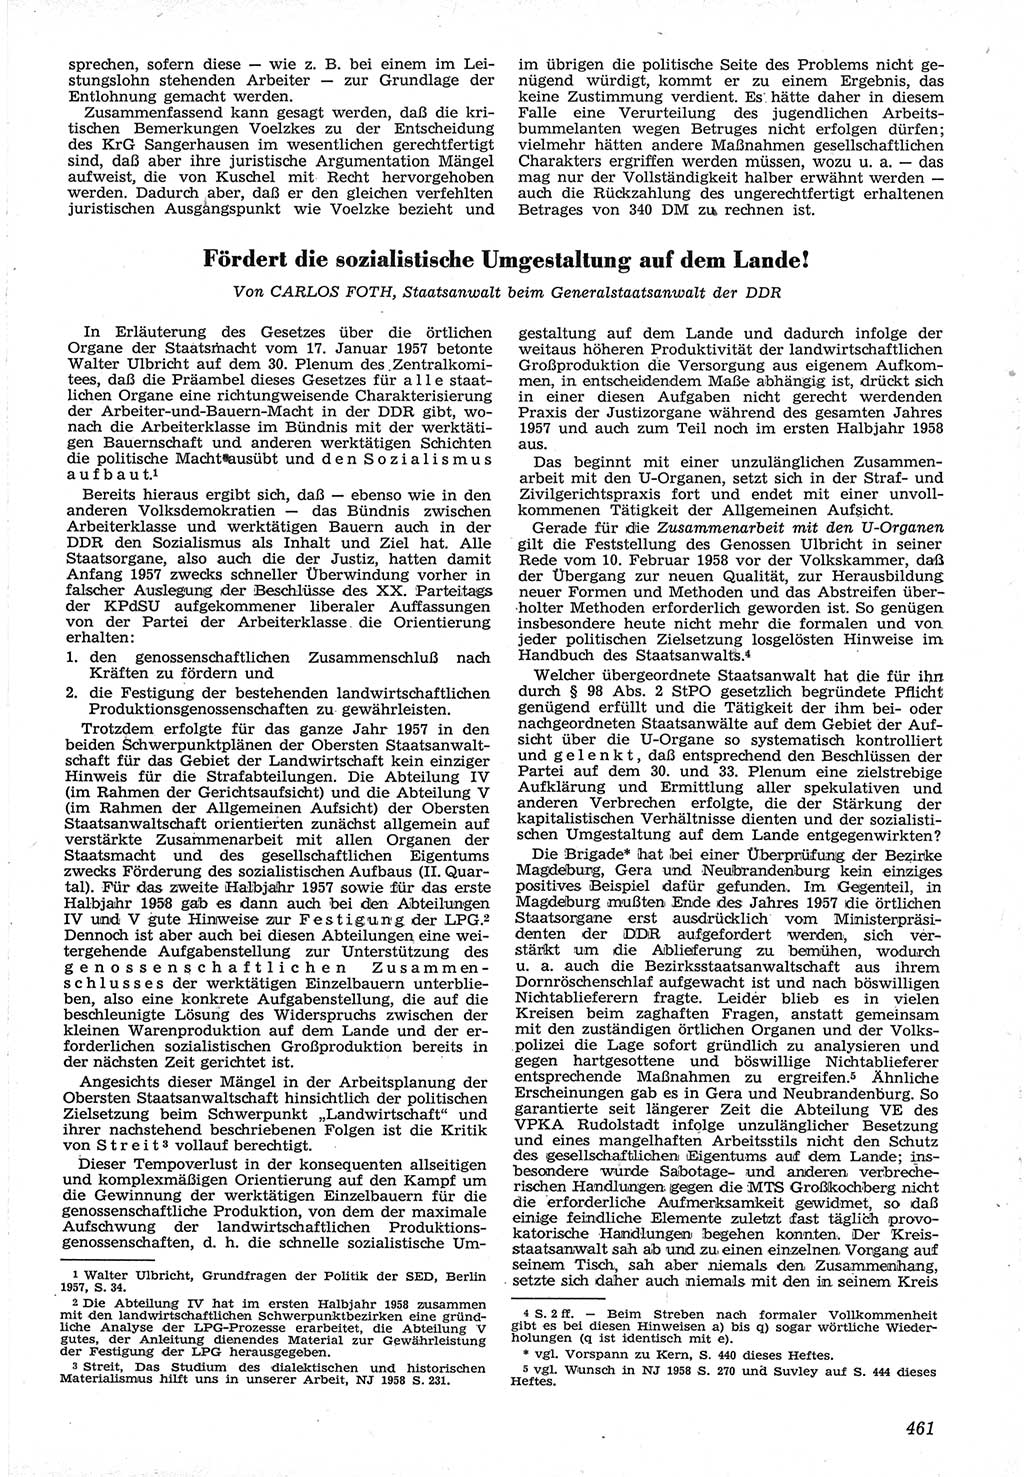 Neue Justiz (NJ), Zeitschrift für Recht und Rechtswissenschaft [Deutsche Demokratische Republik (DDR)], 12. Jahrgang 1958, Seite 461 (NJ DDR 1958, S. 461)